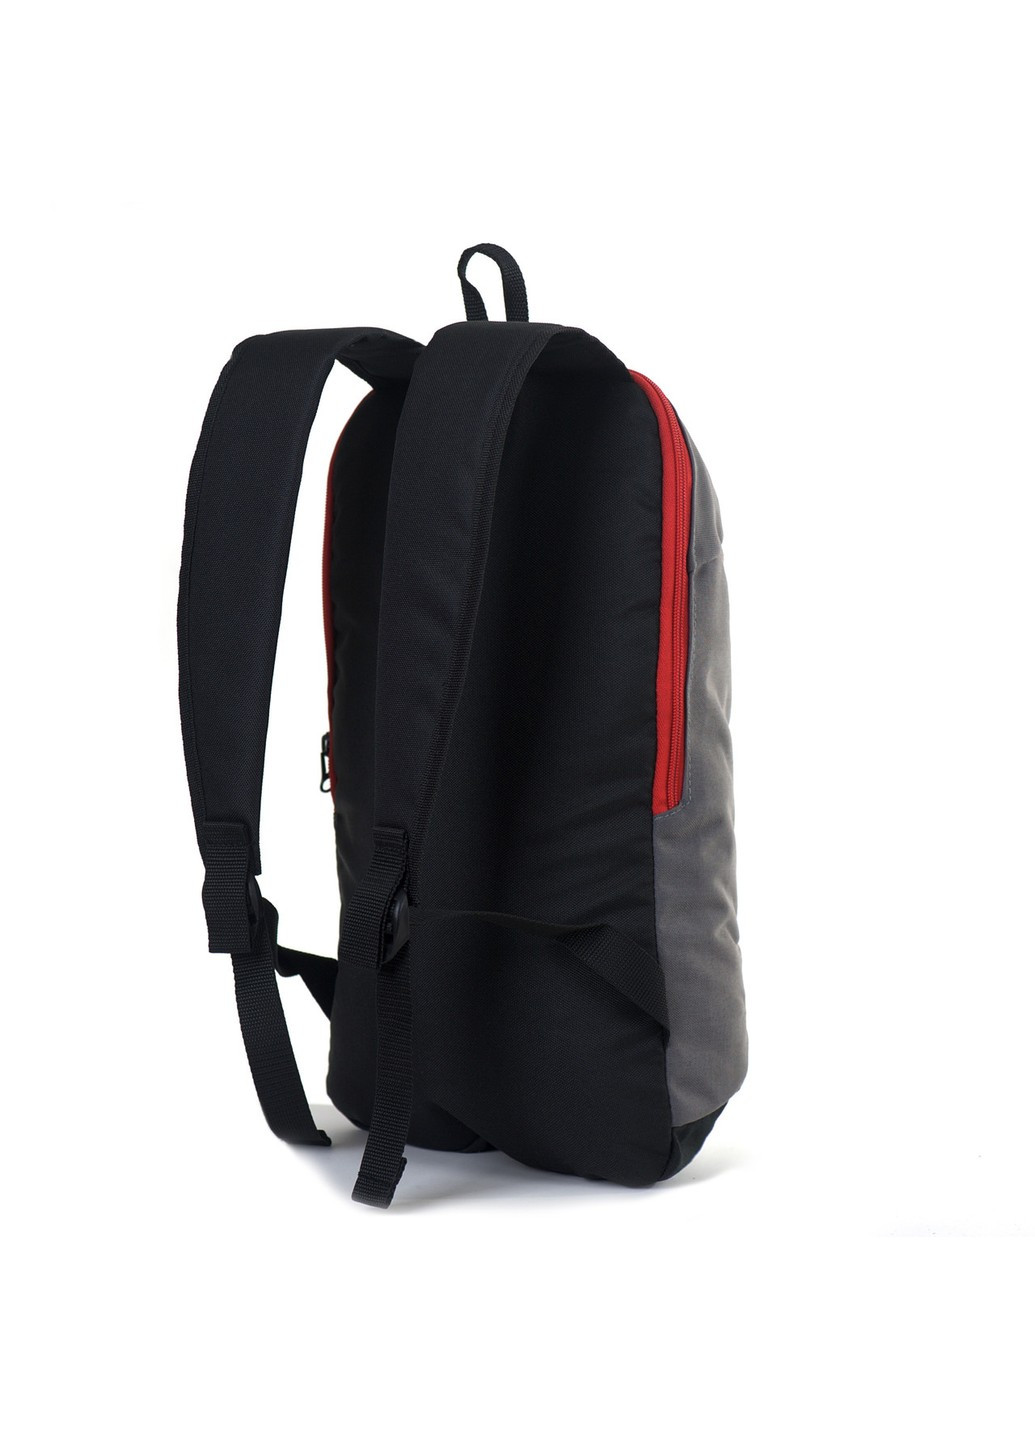 Универсальный серый молодежный практичный рюкзак с черным дном и спинкой водонепроницаемый спортивный No Brand (258591278)